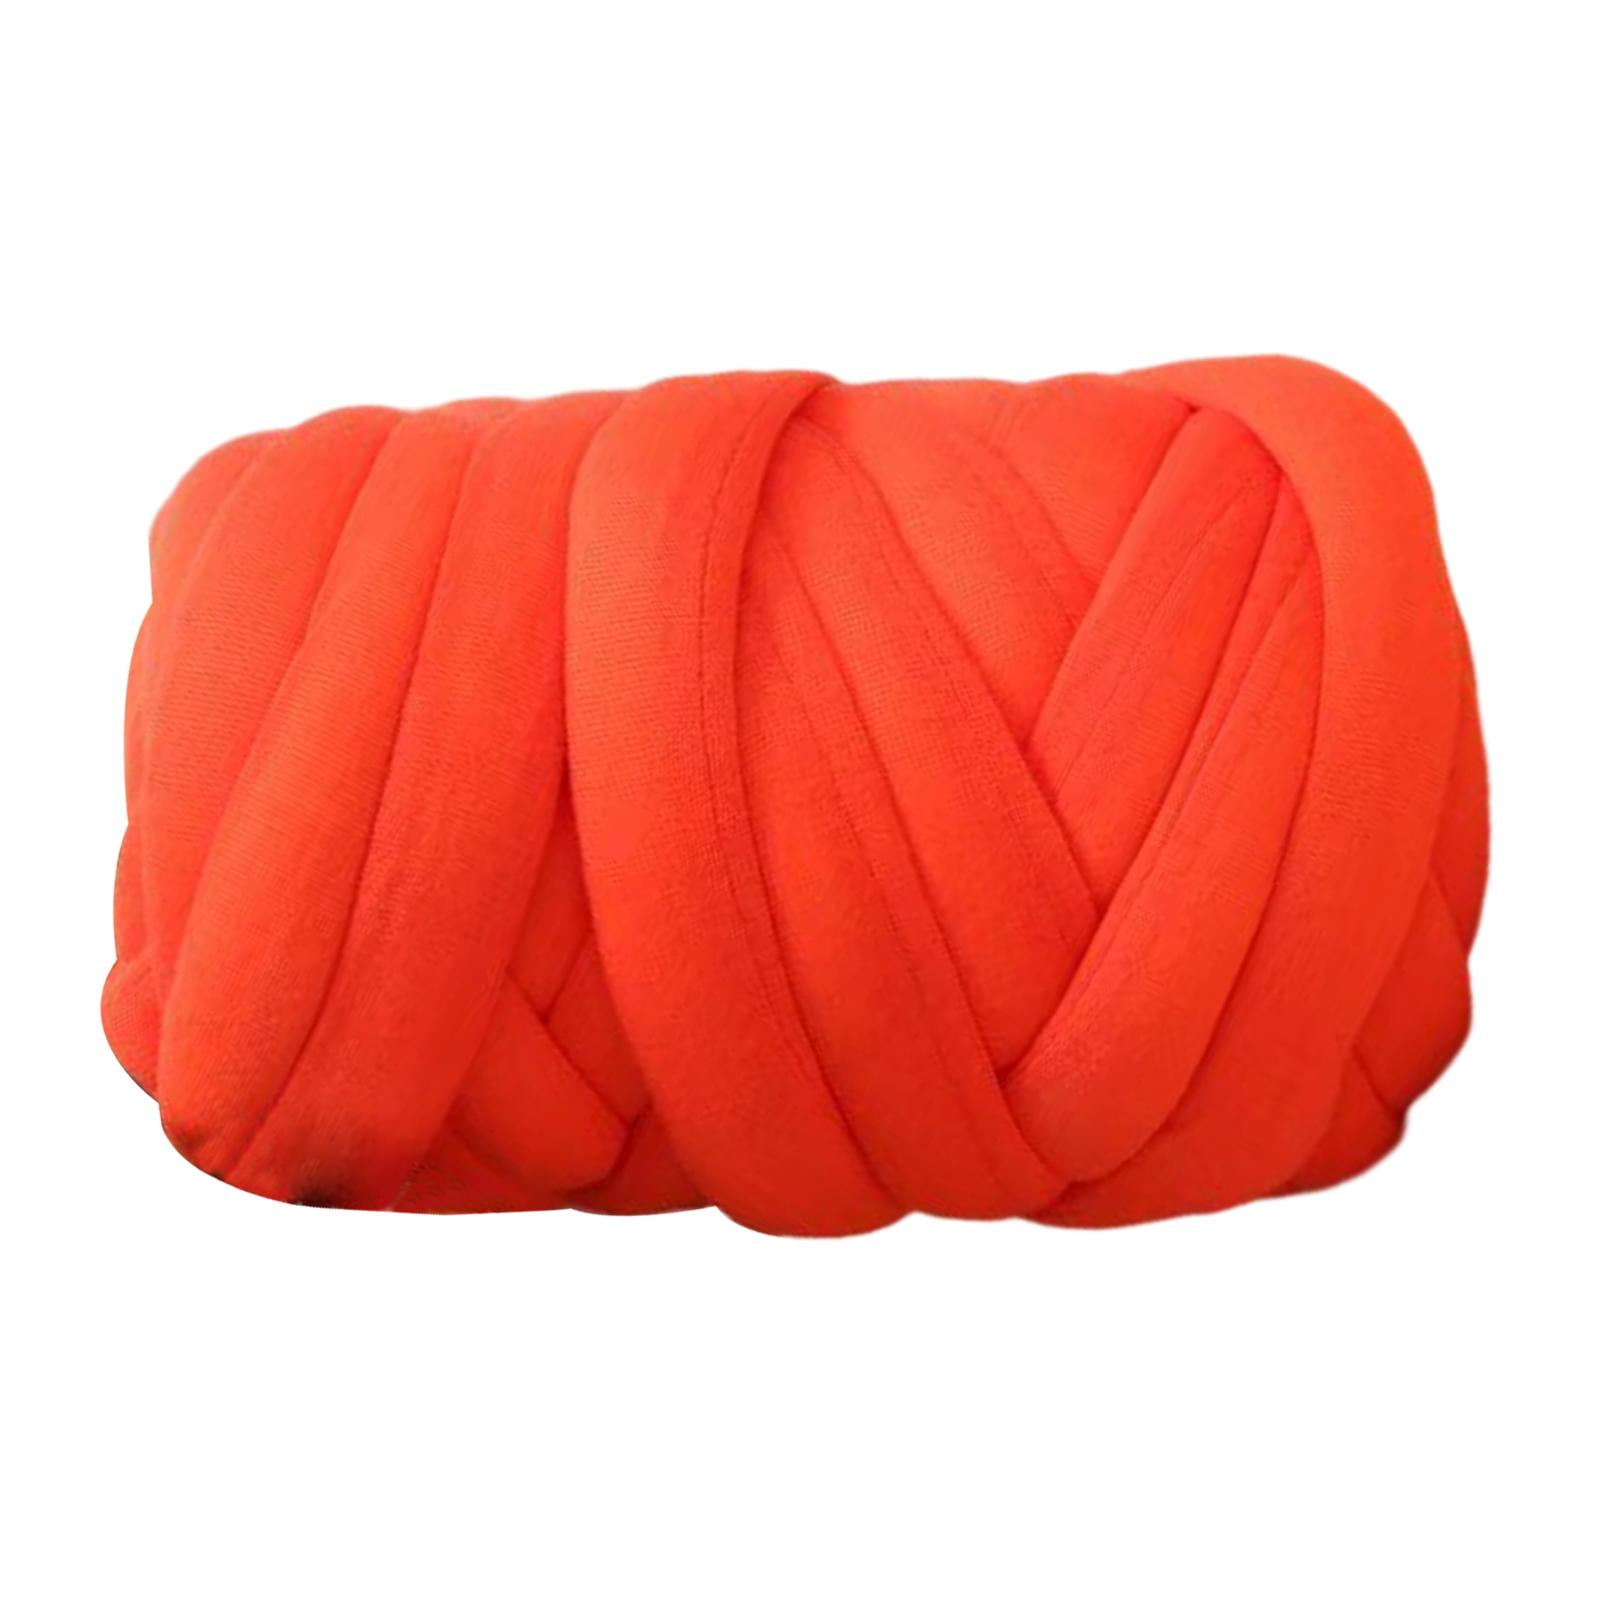 Chunky Fluffy Chenille Yarn Orange Bulky Thick Washable Yarn Soft Warm Scarf Yarn Hand Knit Blanket Yarn Accessory Yarn 160g